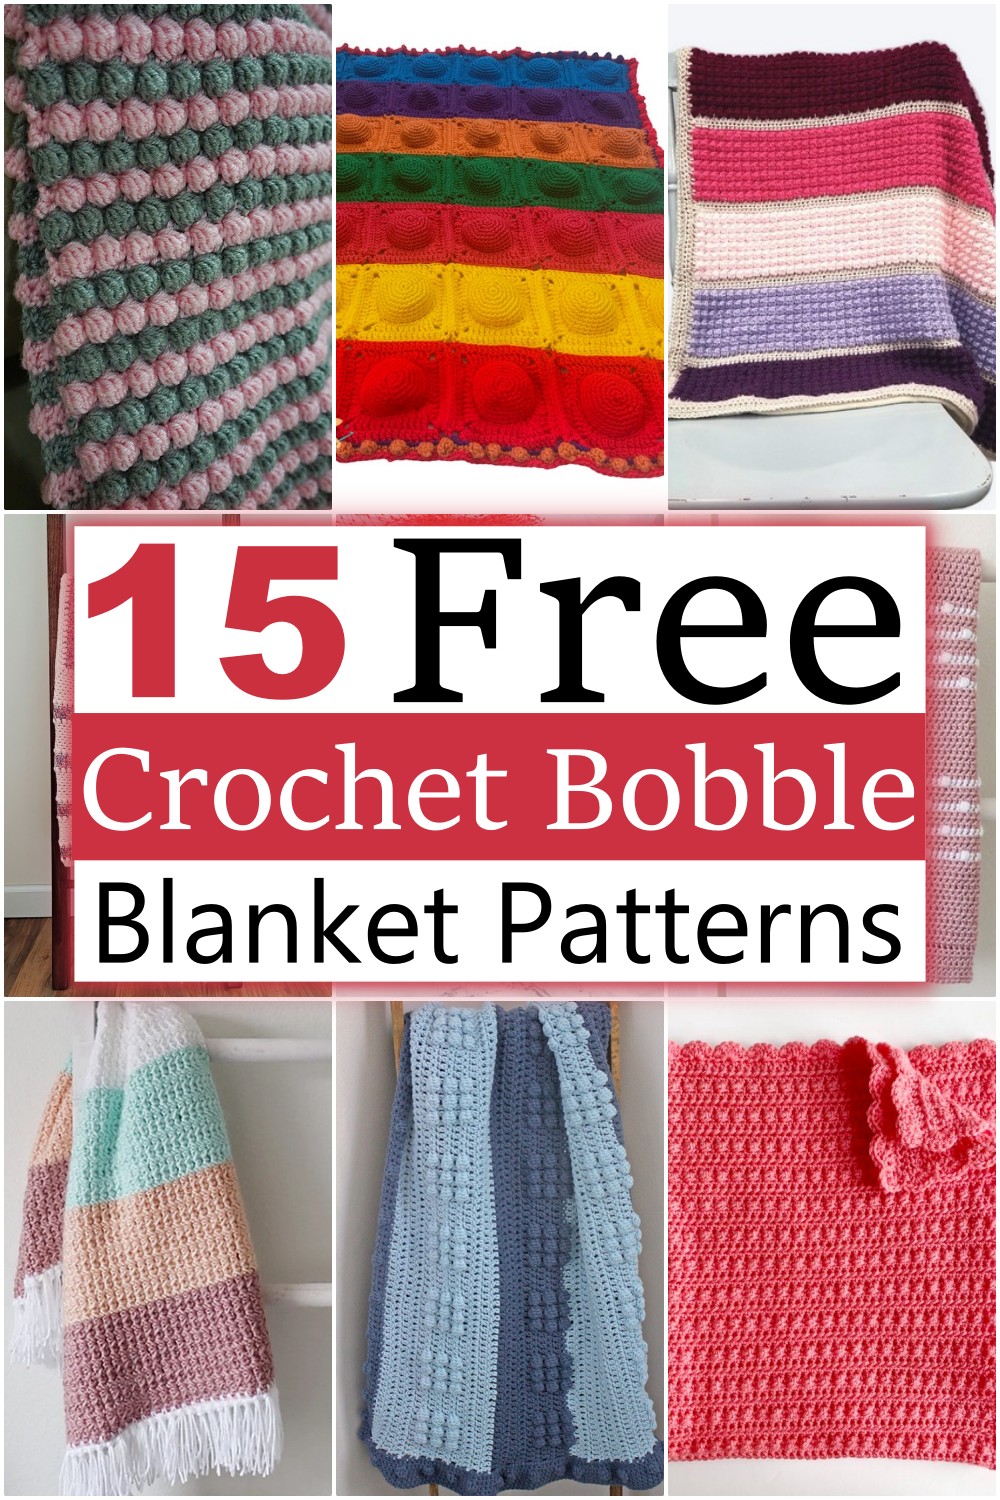 Crochet Bobble Blanket Patterns